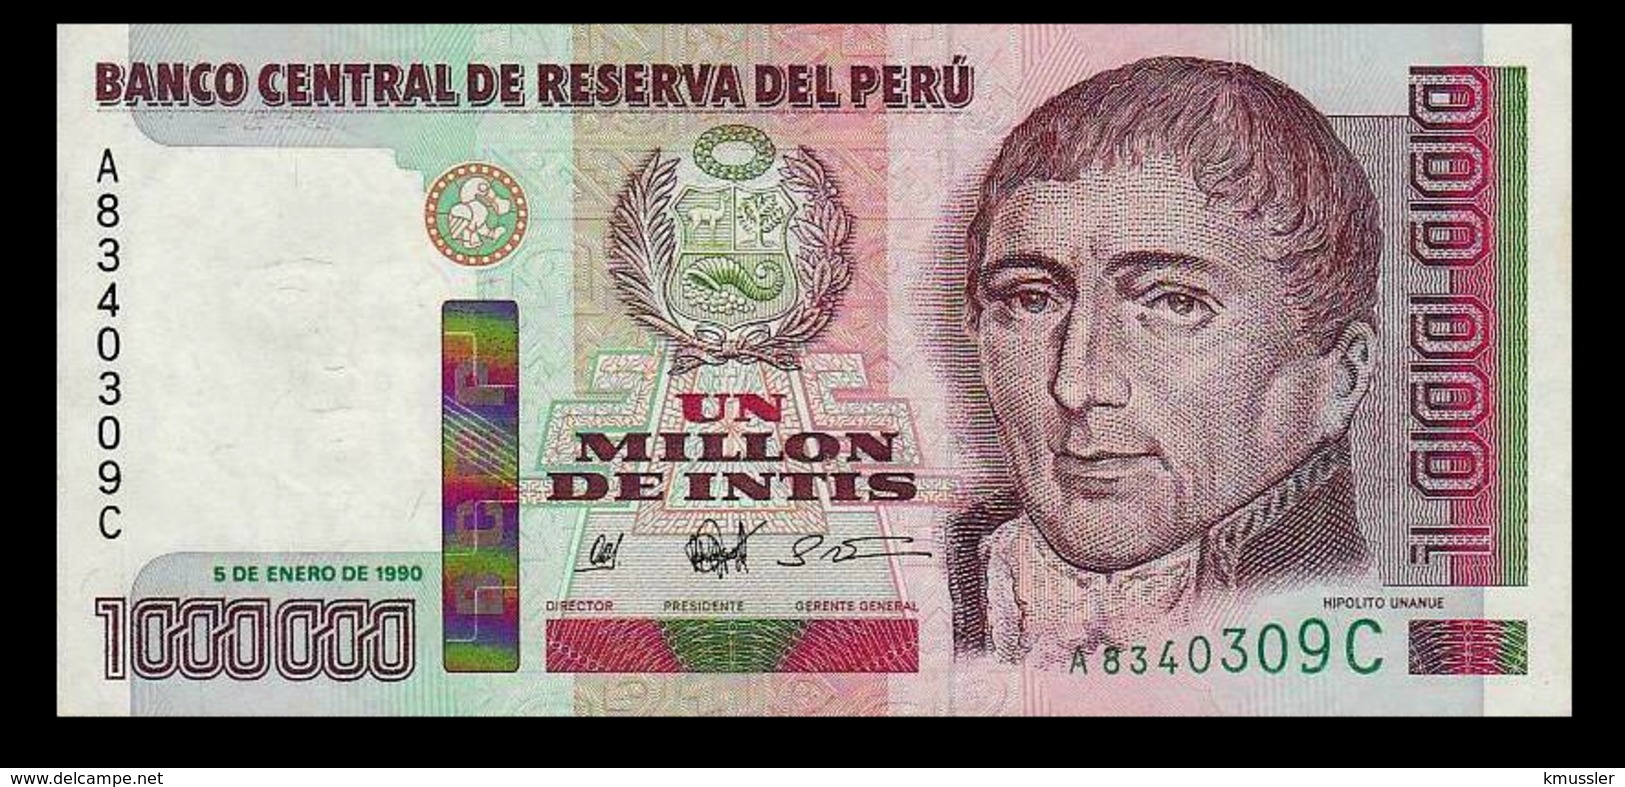 # # # Banknote Peru 1.000.000 Intis 1990 UNC # # # - Peru